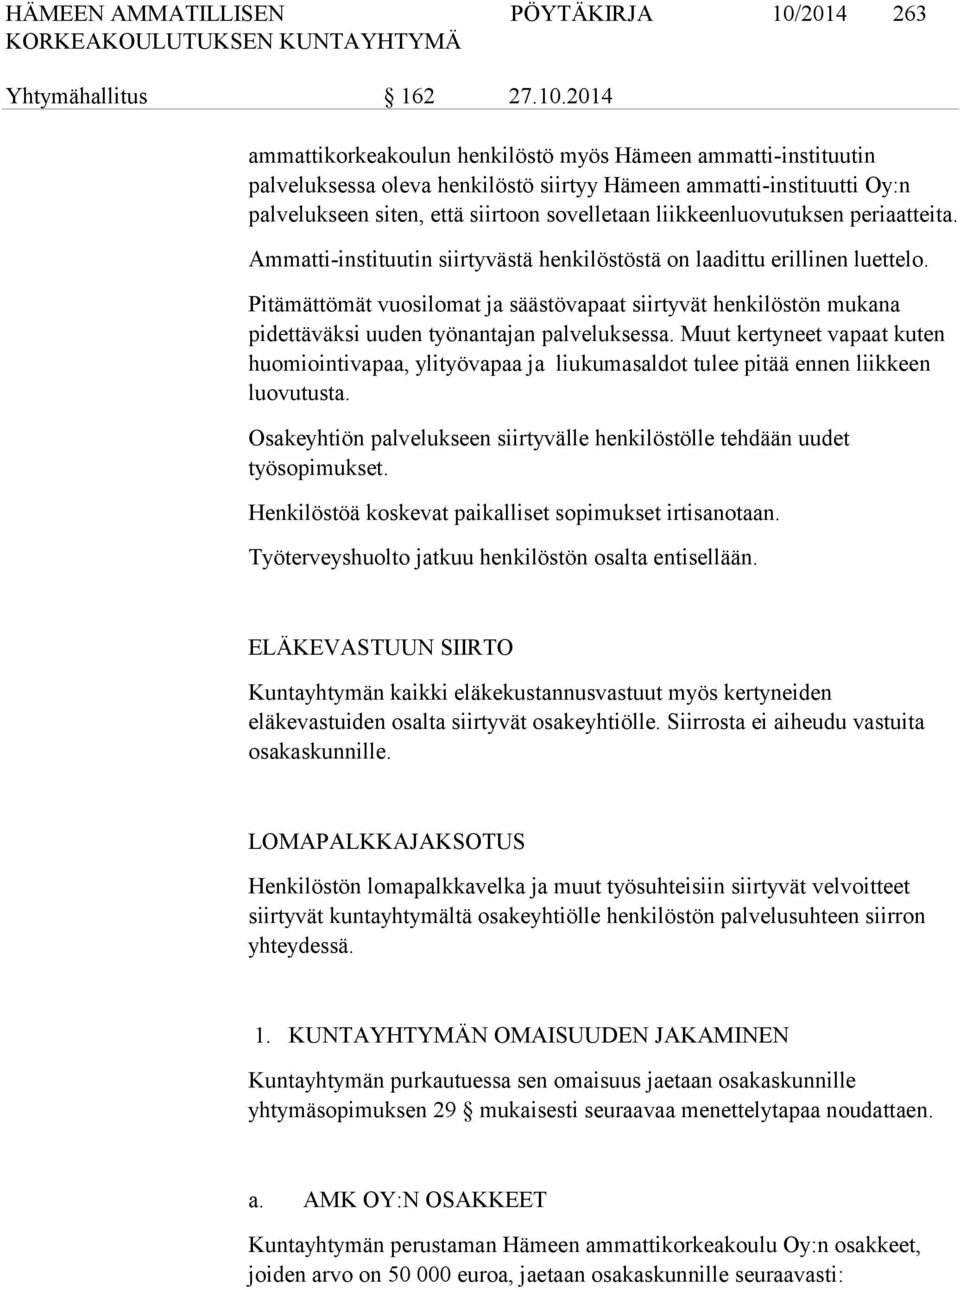 2014 ammattikorkeakoulun henkilöstö myös Hämeen ammatti-instituutin palveluksessa oleva henkilöstö siirtyy Hämeen ammatti-instituutti Oy:n palvelukseen siten, että siirtoon sovelletaan